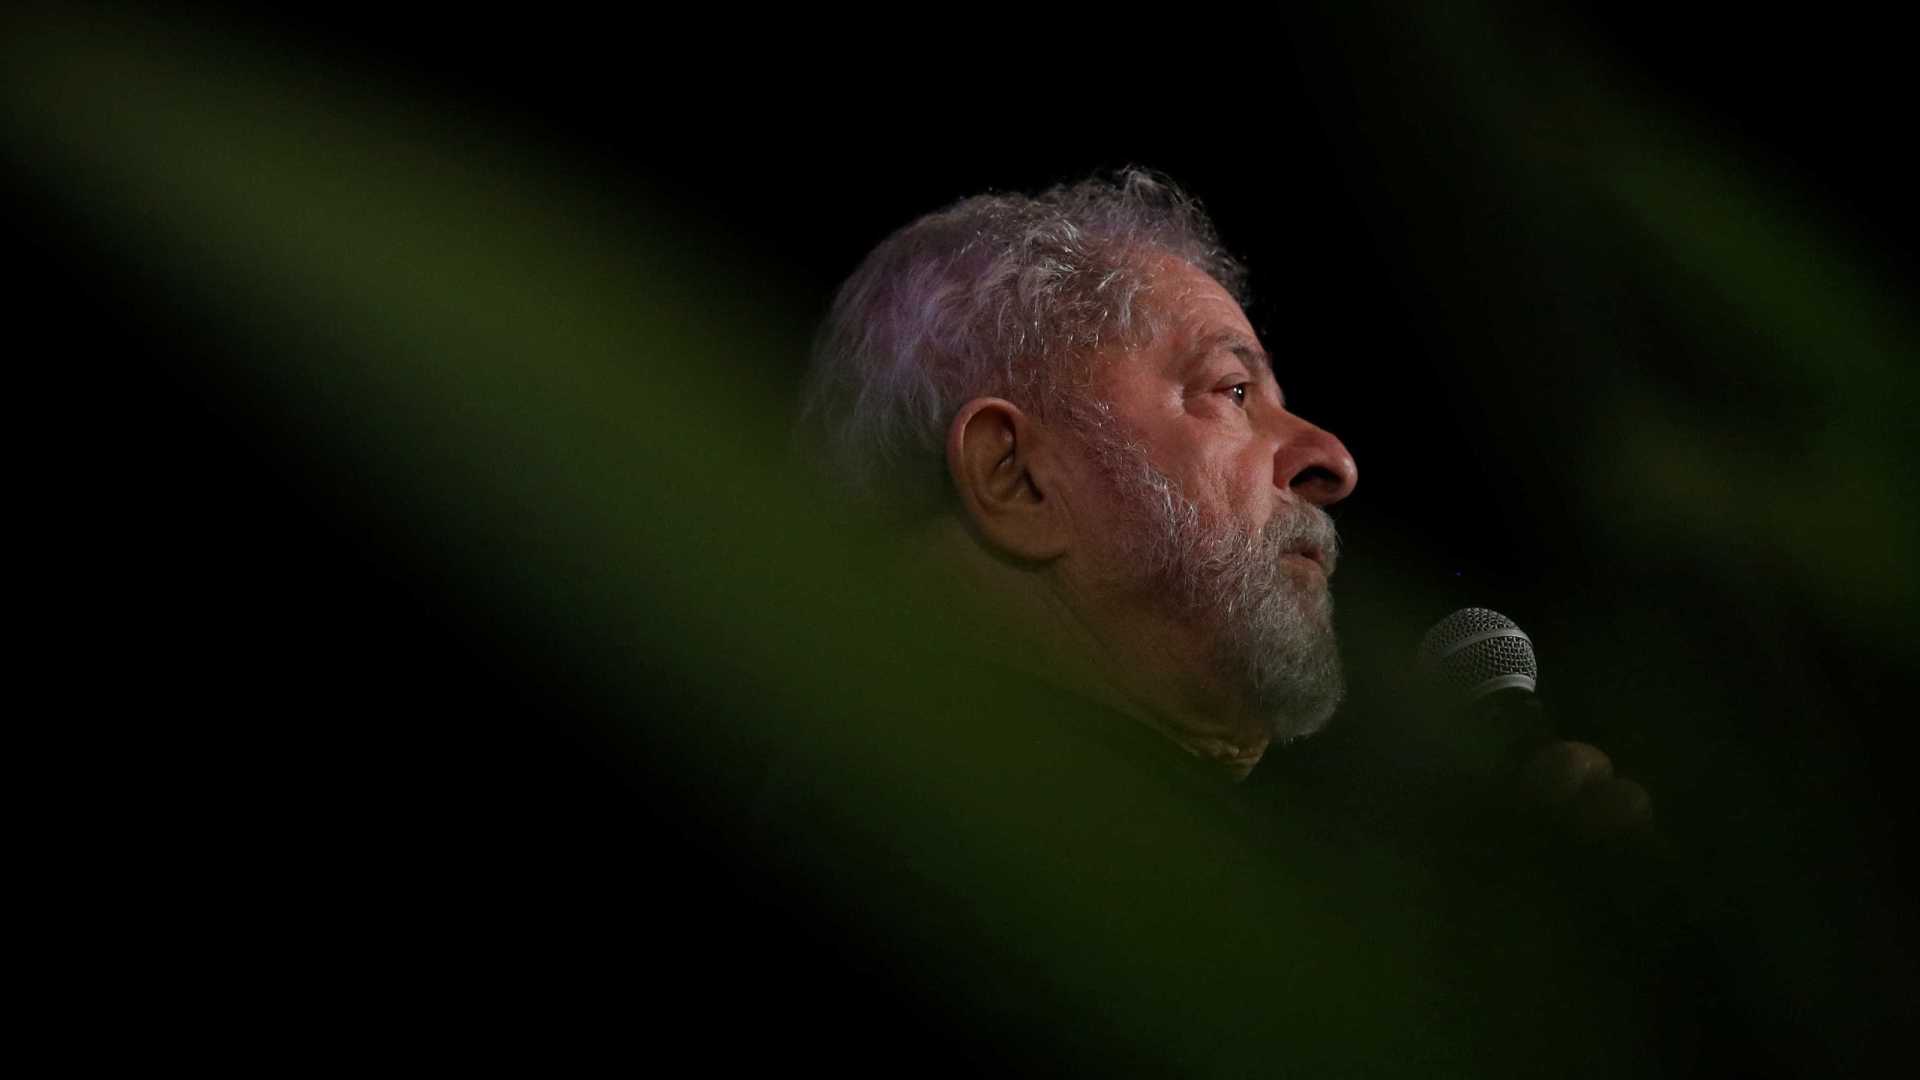 Eu me considero um inocente condenado e perseguido, afirma Lula